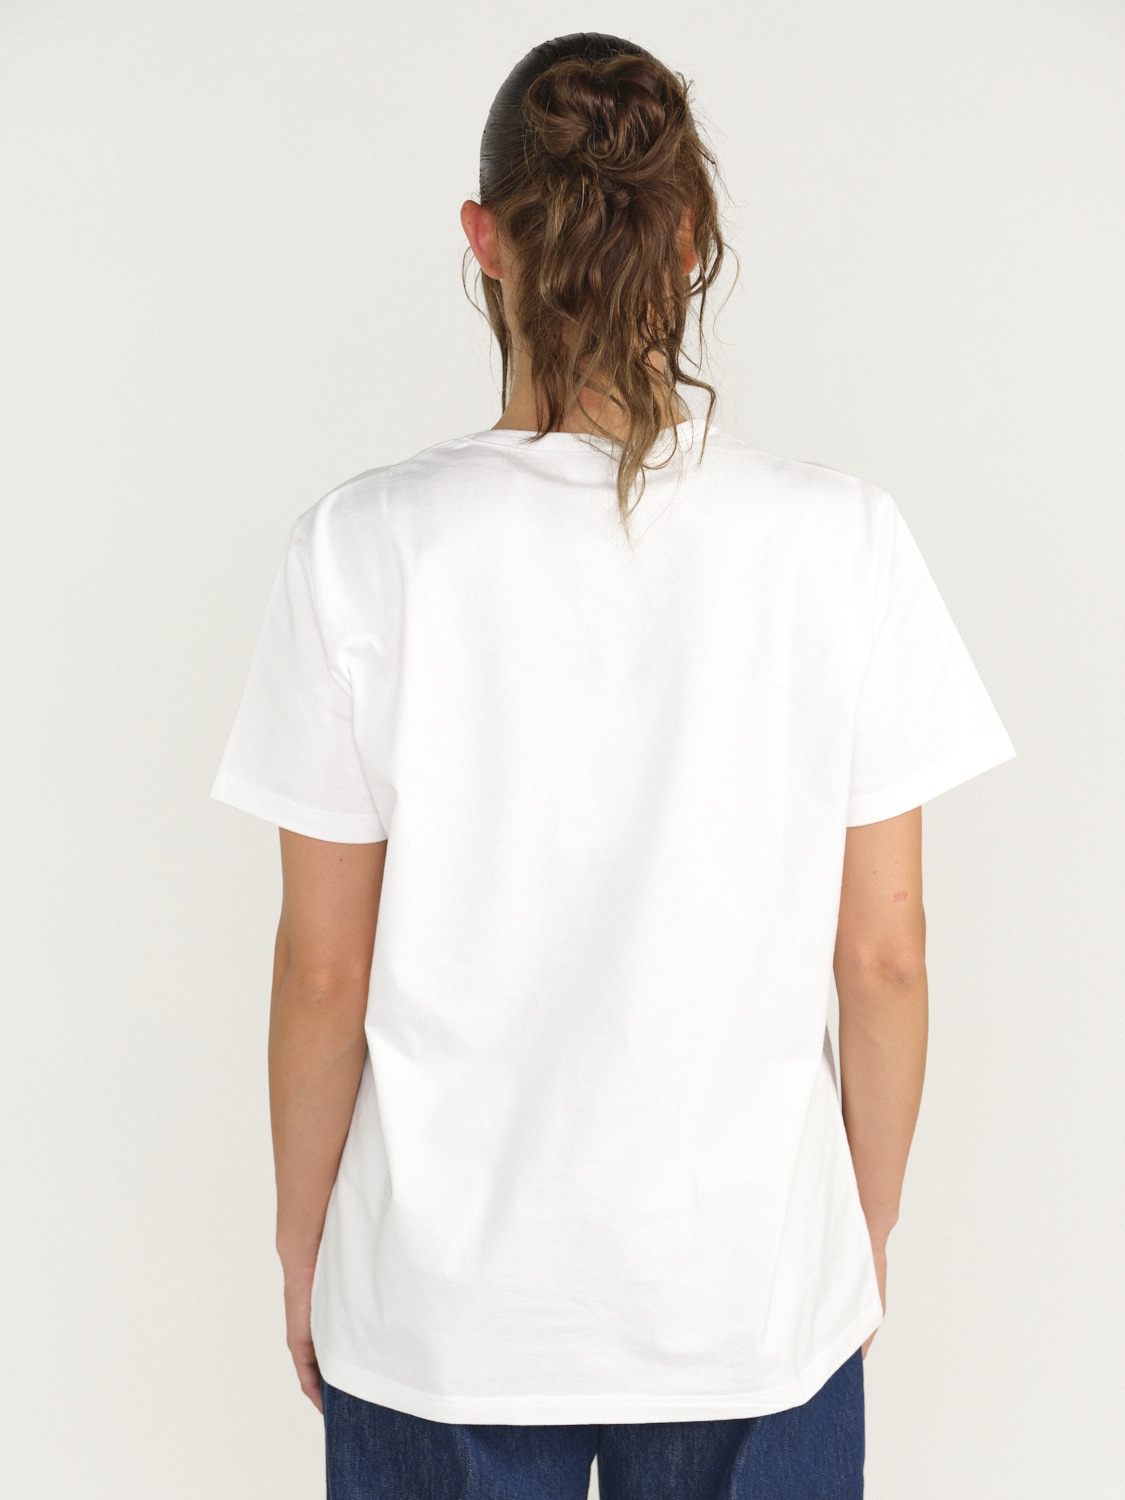 Barrie Barrie - Tapa de libro - Camiseta de algodón con parche azul S